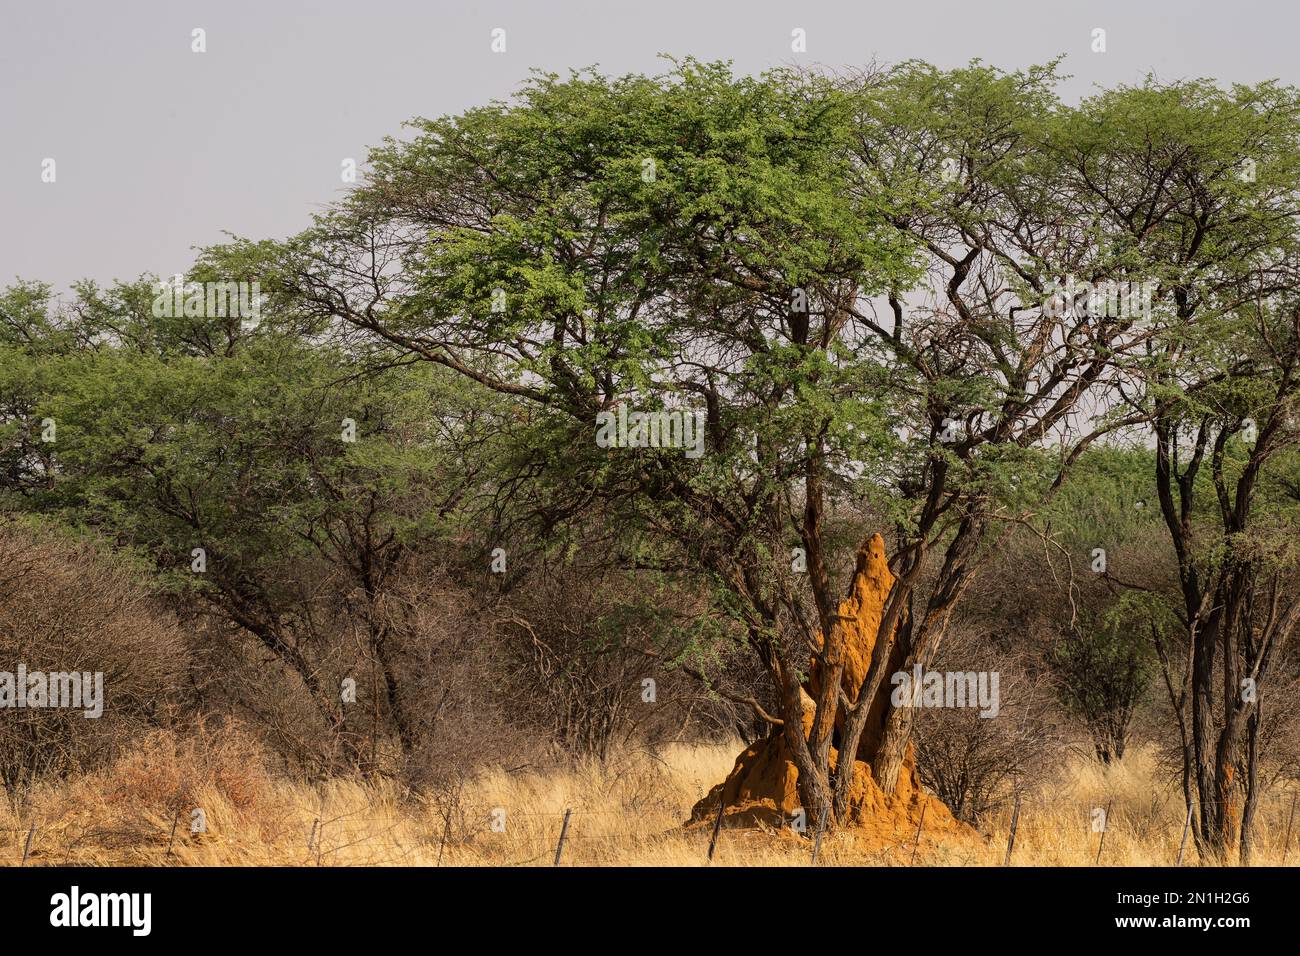 Nid de termite géante, Macrotermes michaelseni, Termitidae, Namibie, Afriica. Banque D'Images